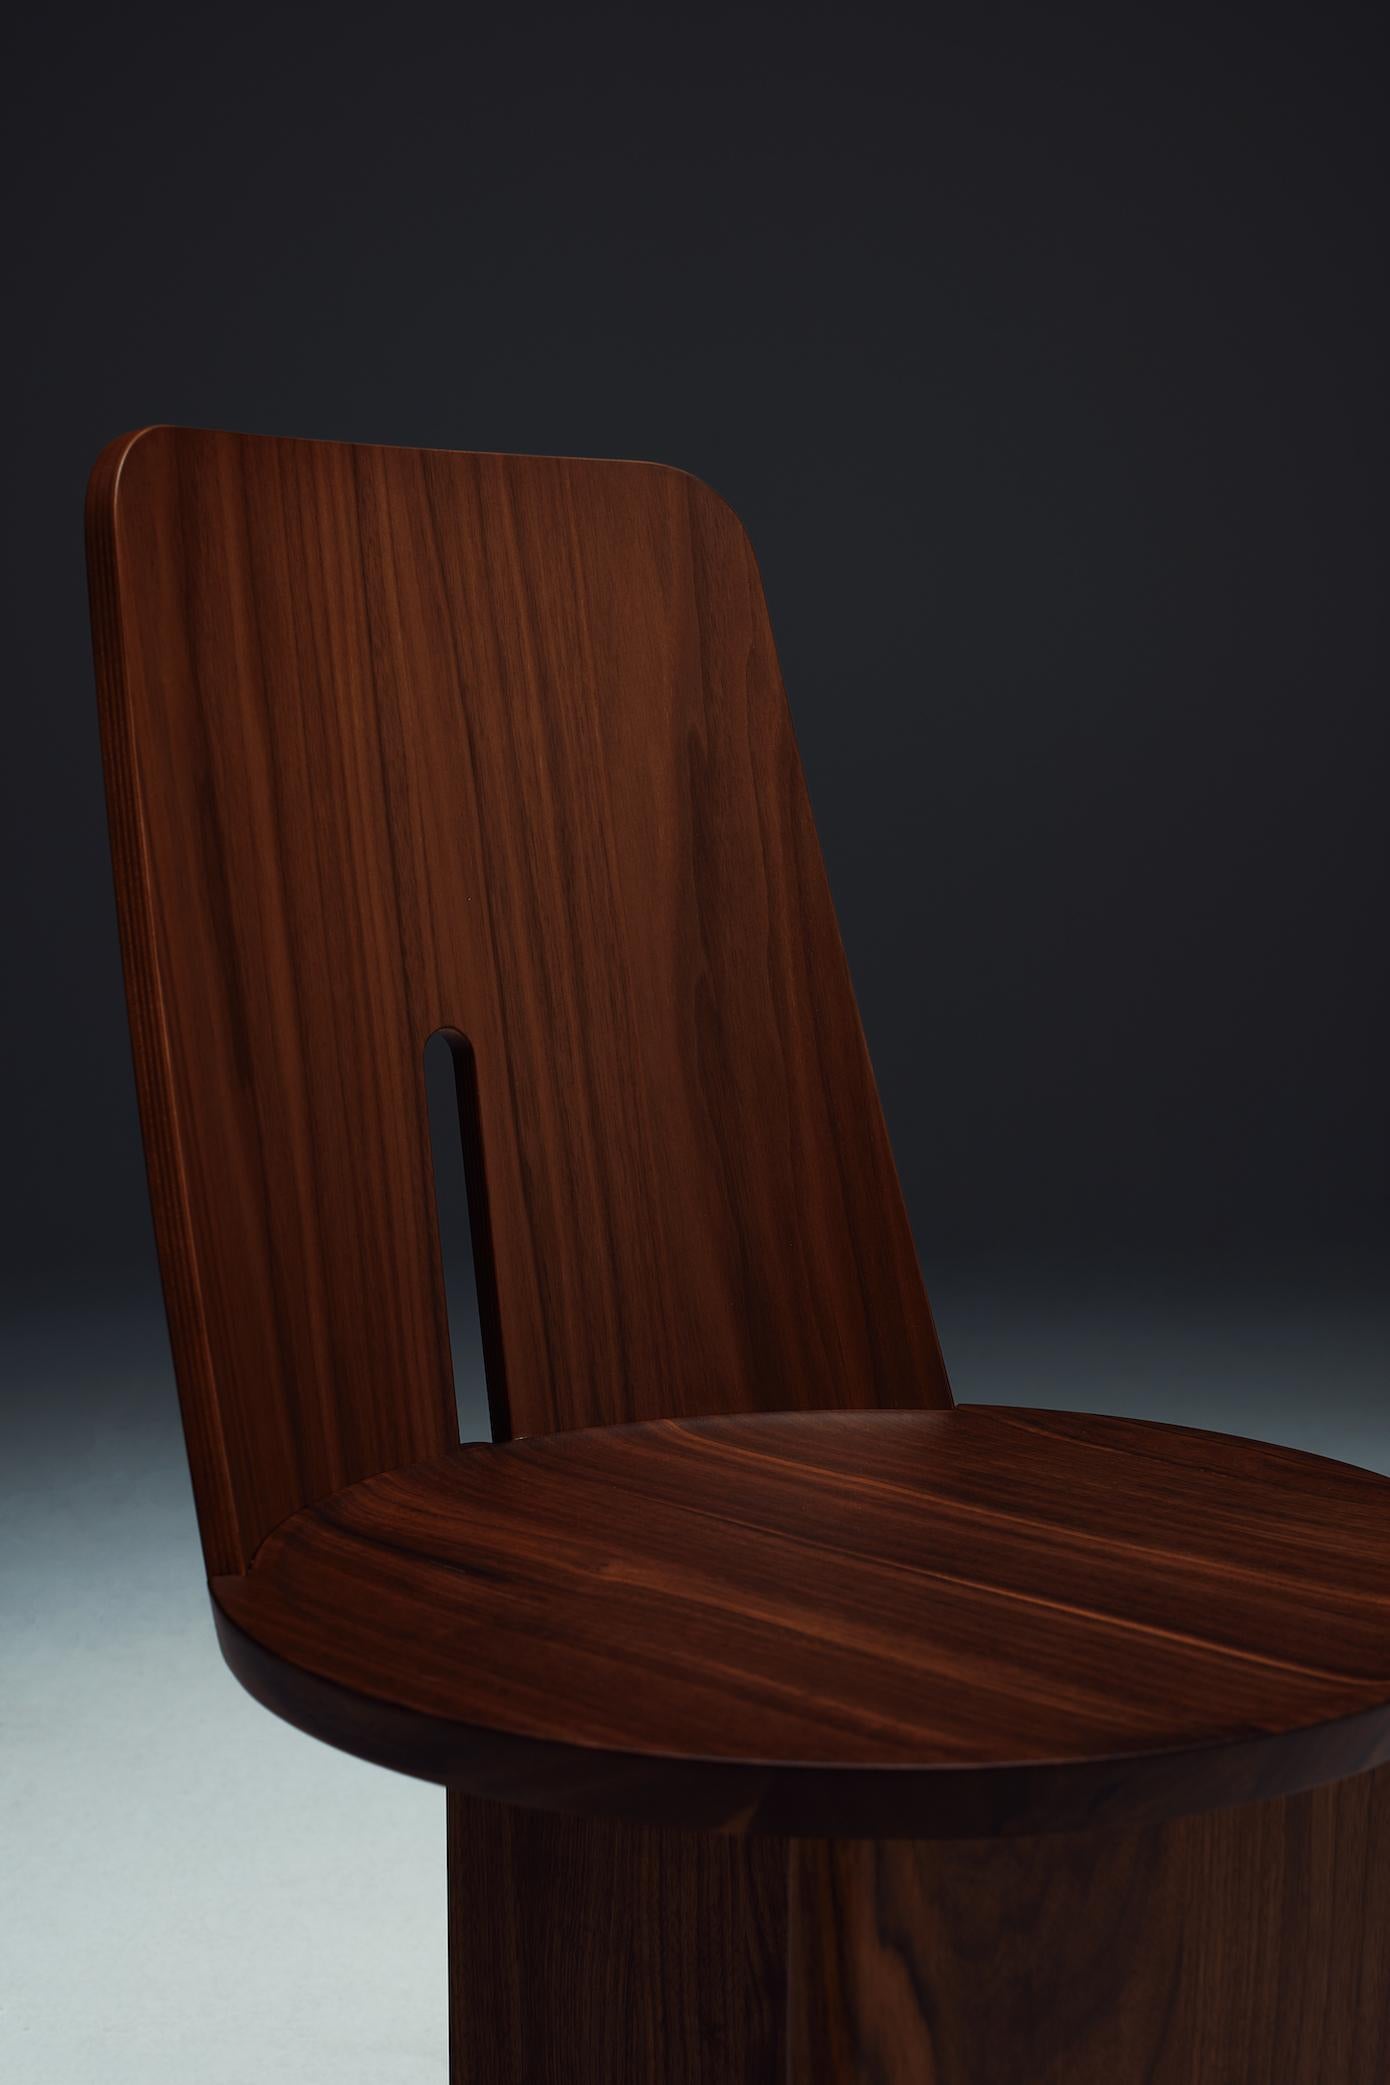 Pour La Manufacture, Neri & Hu ont créé la chaise Intersection, une collection inspirée de la vie monastique. Une vie de recueillement et de réflexion sur l'essentiel, une vie à communier et à partager en toute sincérité.
L'utilisation de simples